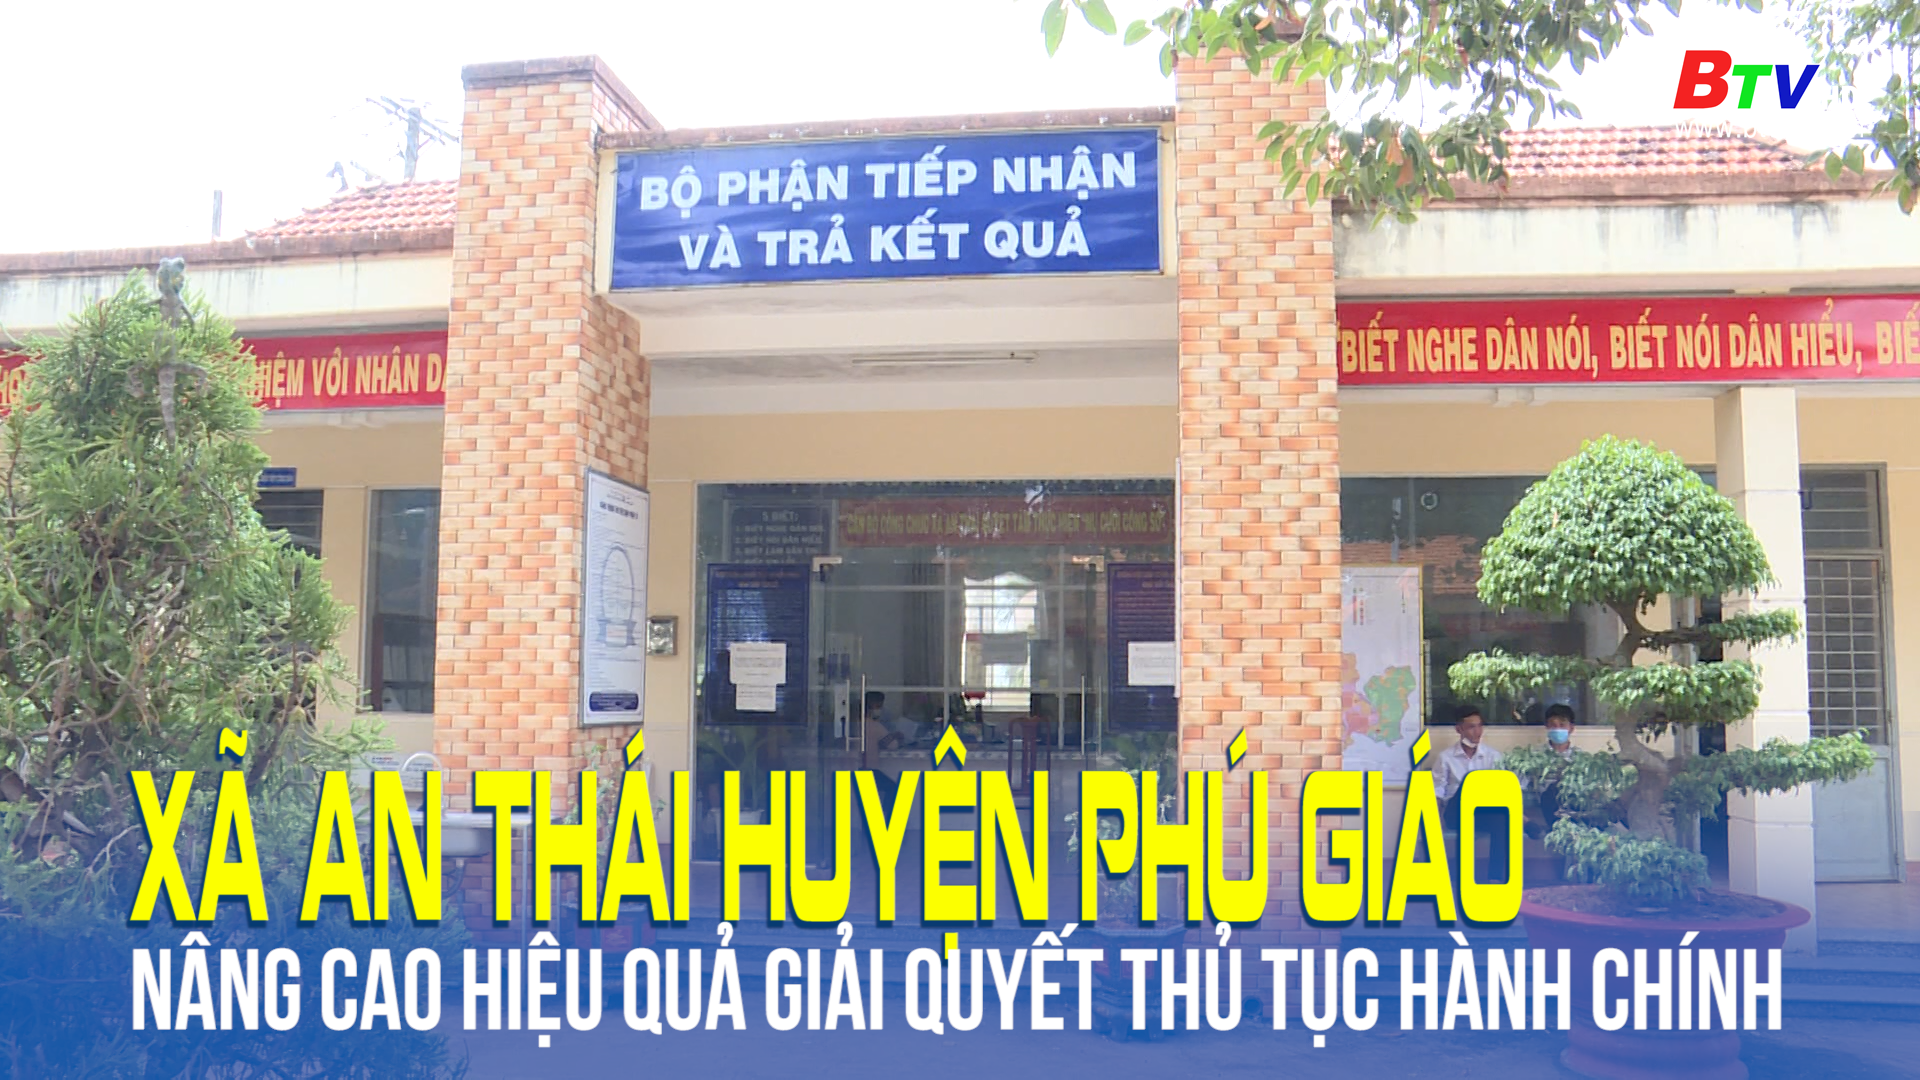 Xã An Thái huyện Phú Giáo nâng cao hiệu quả giải quyết thủ tục hành chính